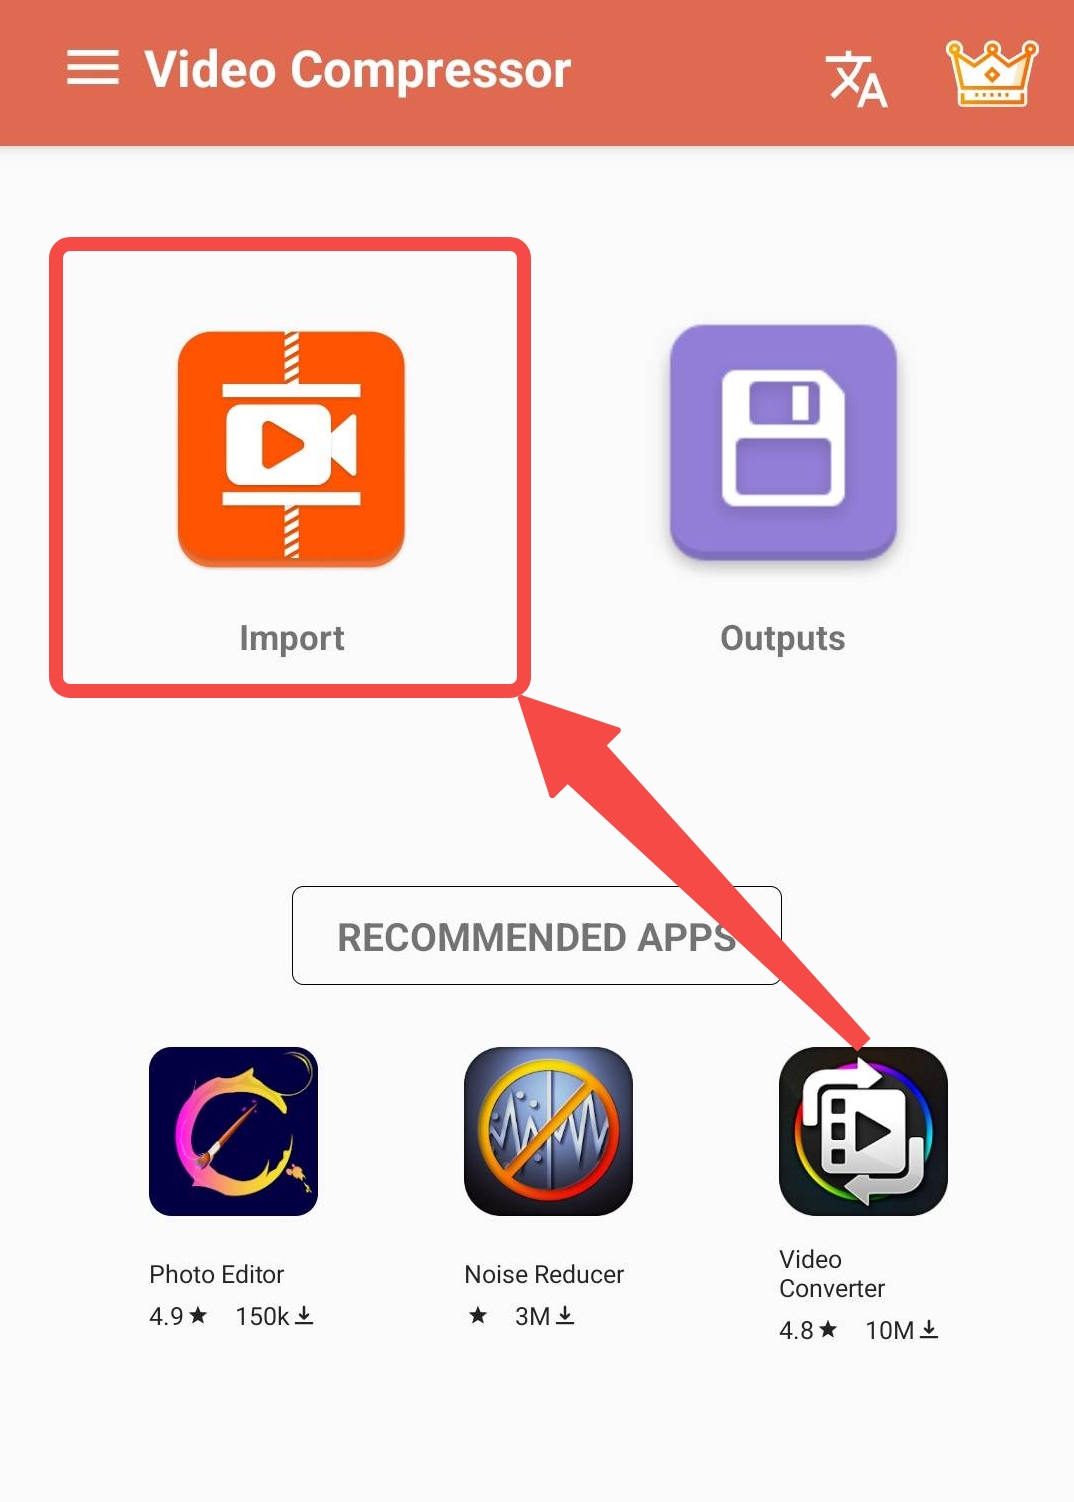 Importieren Sie Dateien in die Videokomprimierungs-App